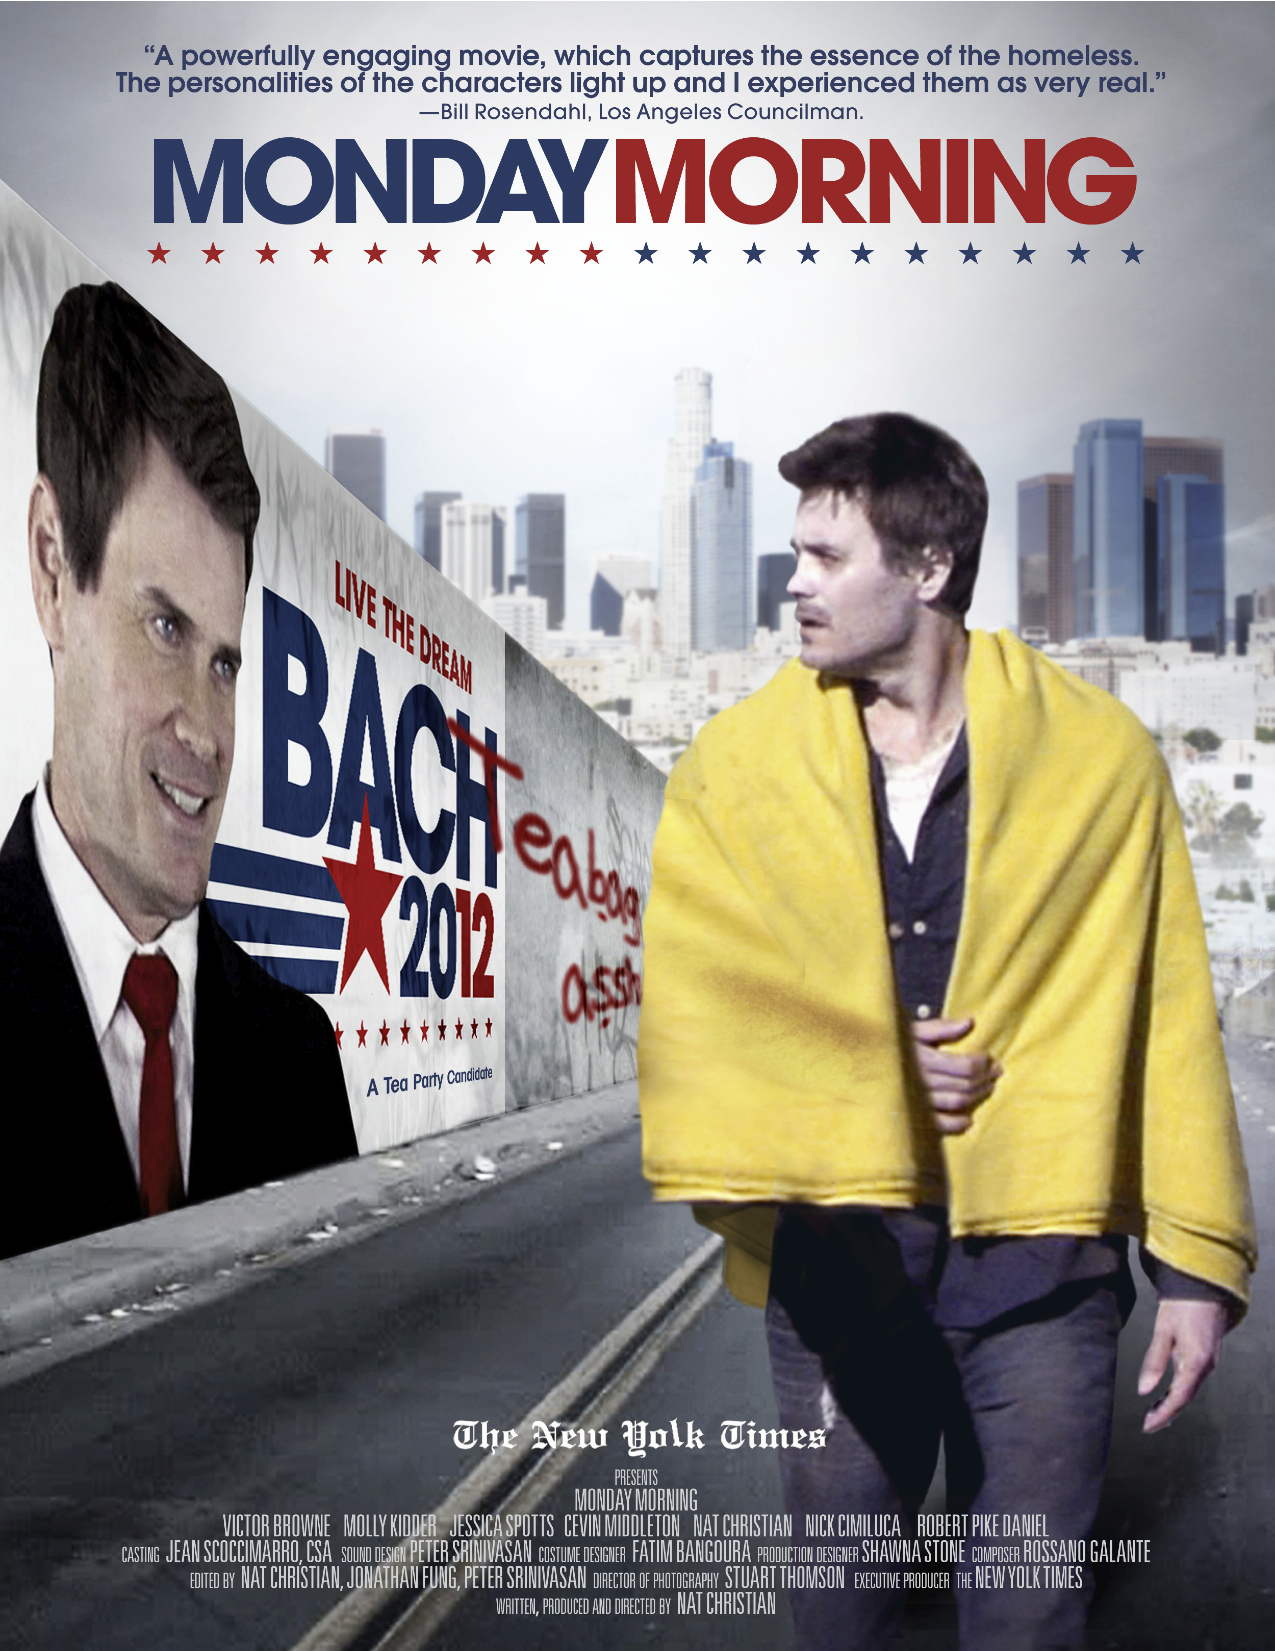 MONDAY MORNING (2012) - Ken Melchior as Senator Carr